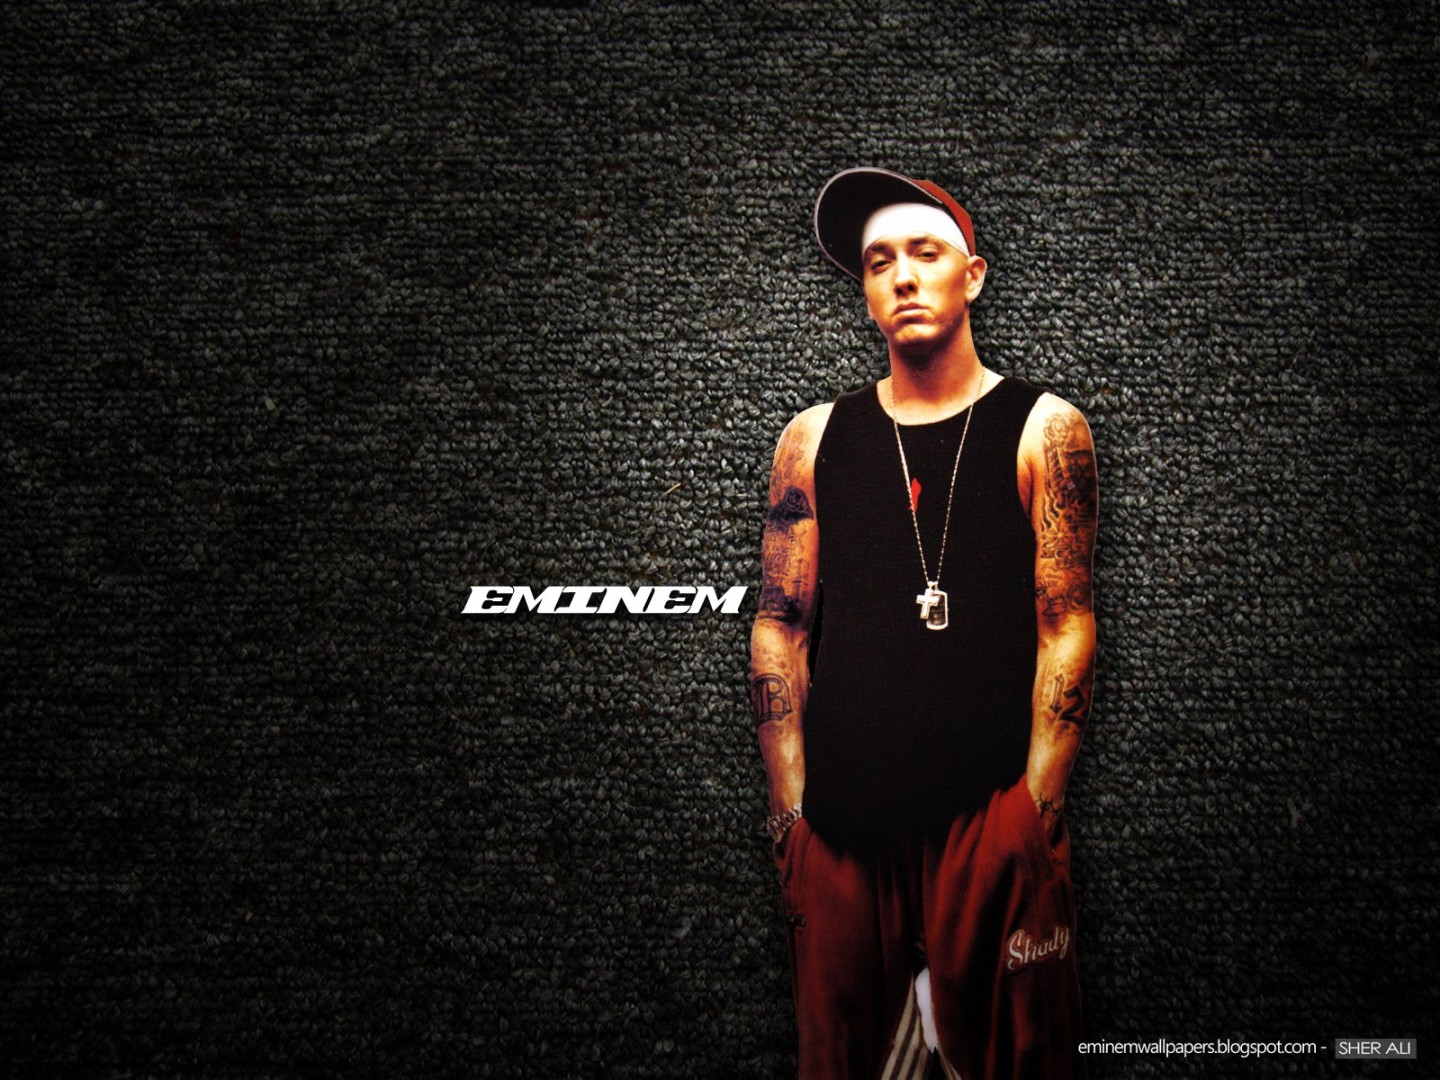 Free download Eminem 2014 Hd Wallpapers Eminem 2014 Photoshoot Eminem Hd  [1440x1080] for your Desktop, Mobile & Tablet | Explore 76+ Eminem  Wallpapers Hd | Eminem Wallpapers, Eminem Wallpaper Hd 2015, Eminem Hd  Wallpapers